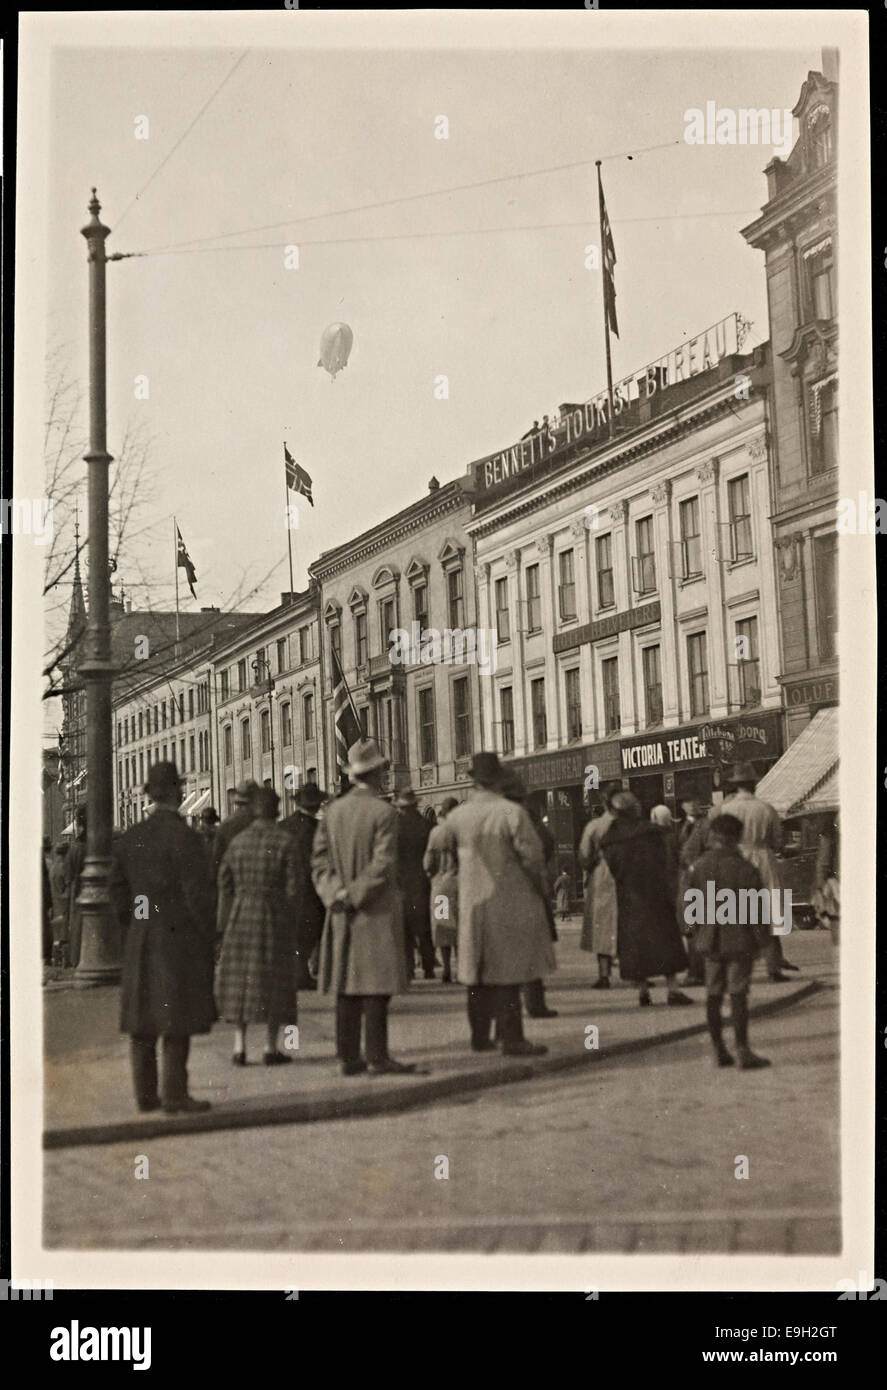 Luftskipet «Norge' sur Oslo, 14 avril 1926. Banque D'Images